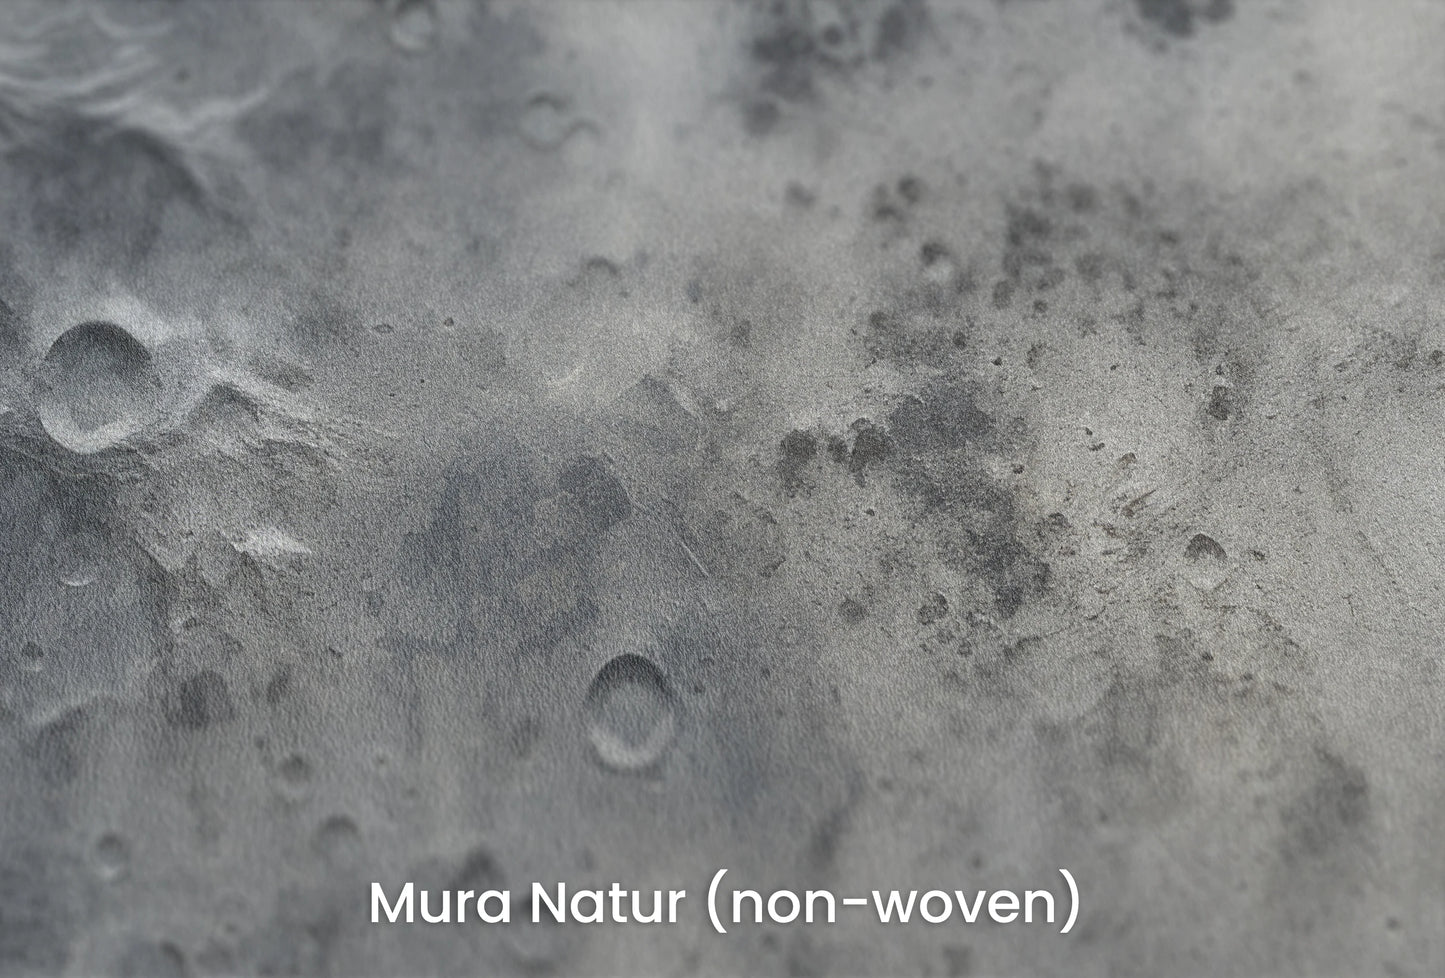 Zbliżenie na artystyczną fototapetę o nazwie Lunar Shadows na podłożu Mura Natur (non-woven) - naturalne i ekologiczne podłoże.